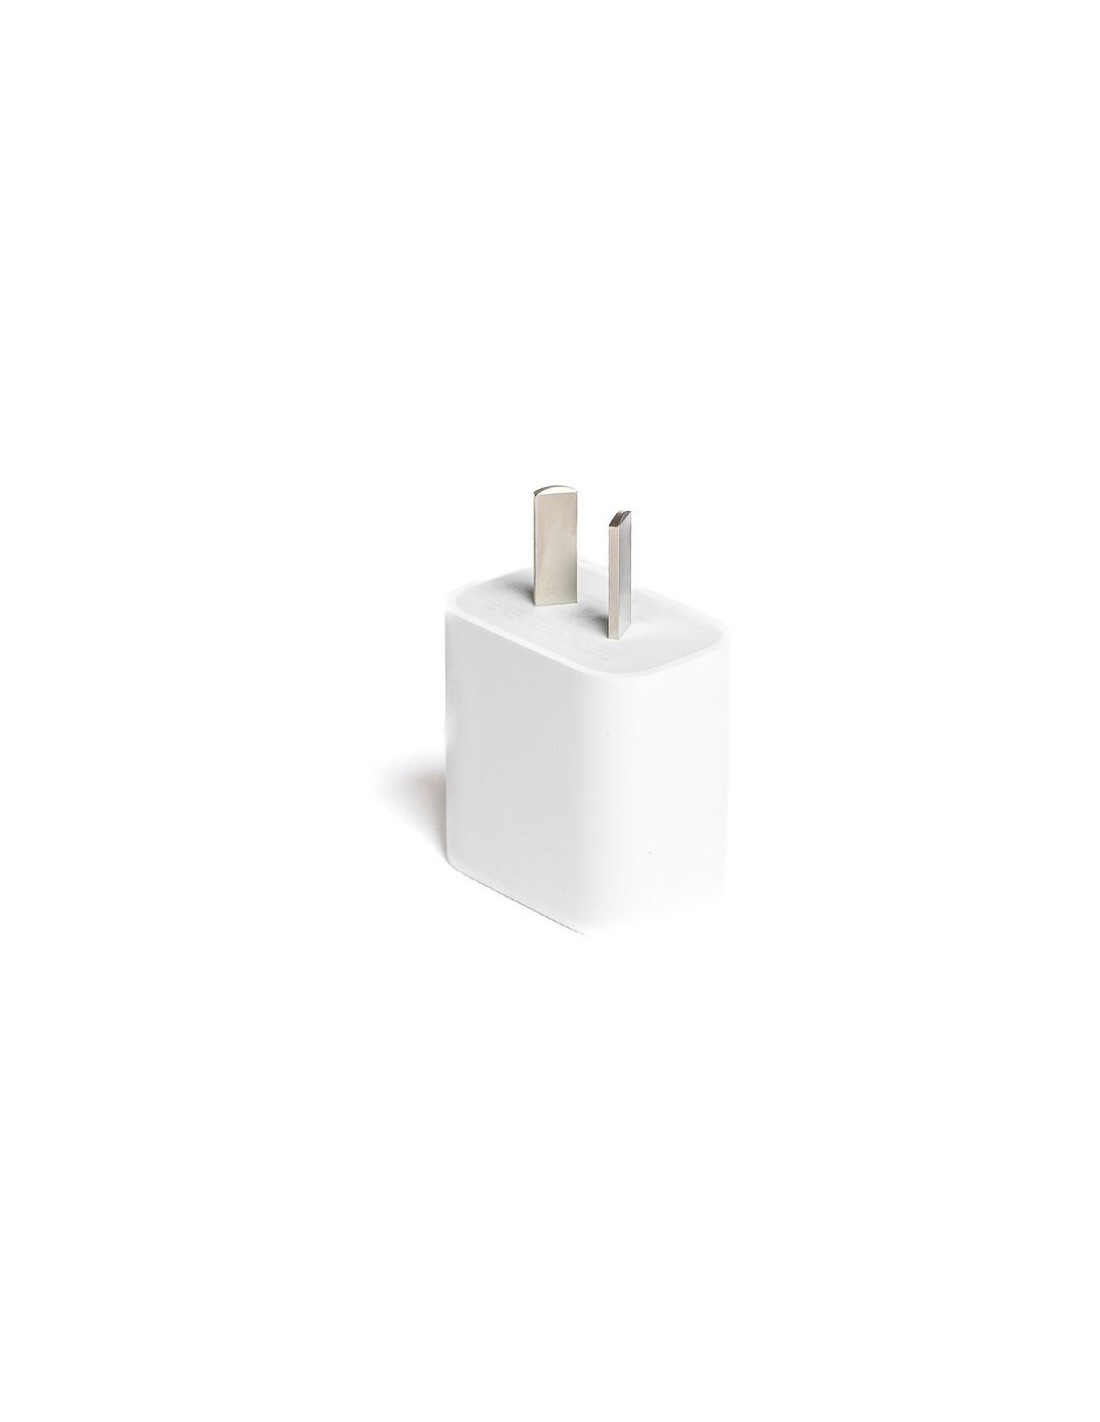 Adaptador de corriente Apple USB Tipo C 30W iPhone/iPad/MacBook